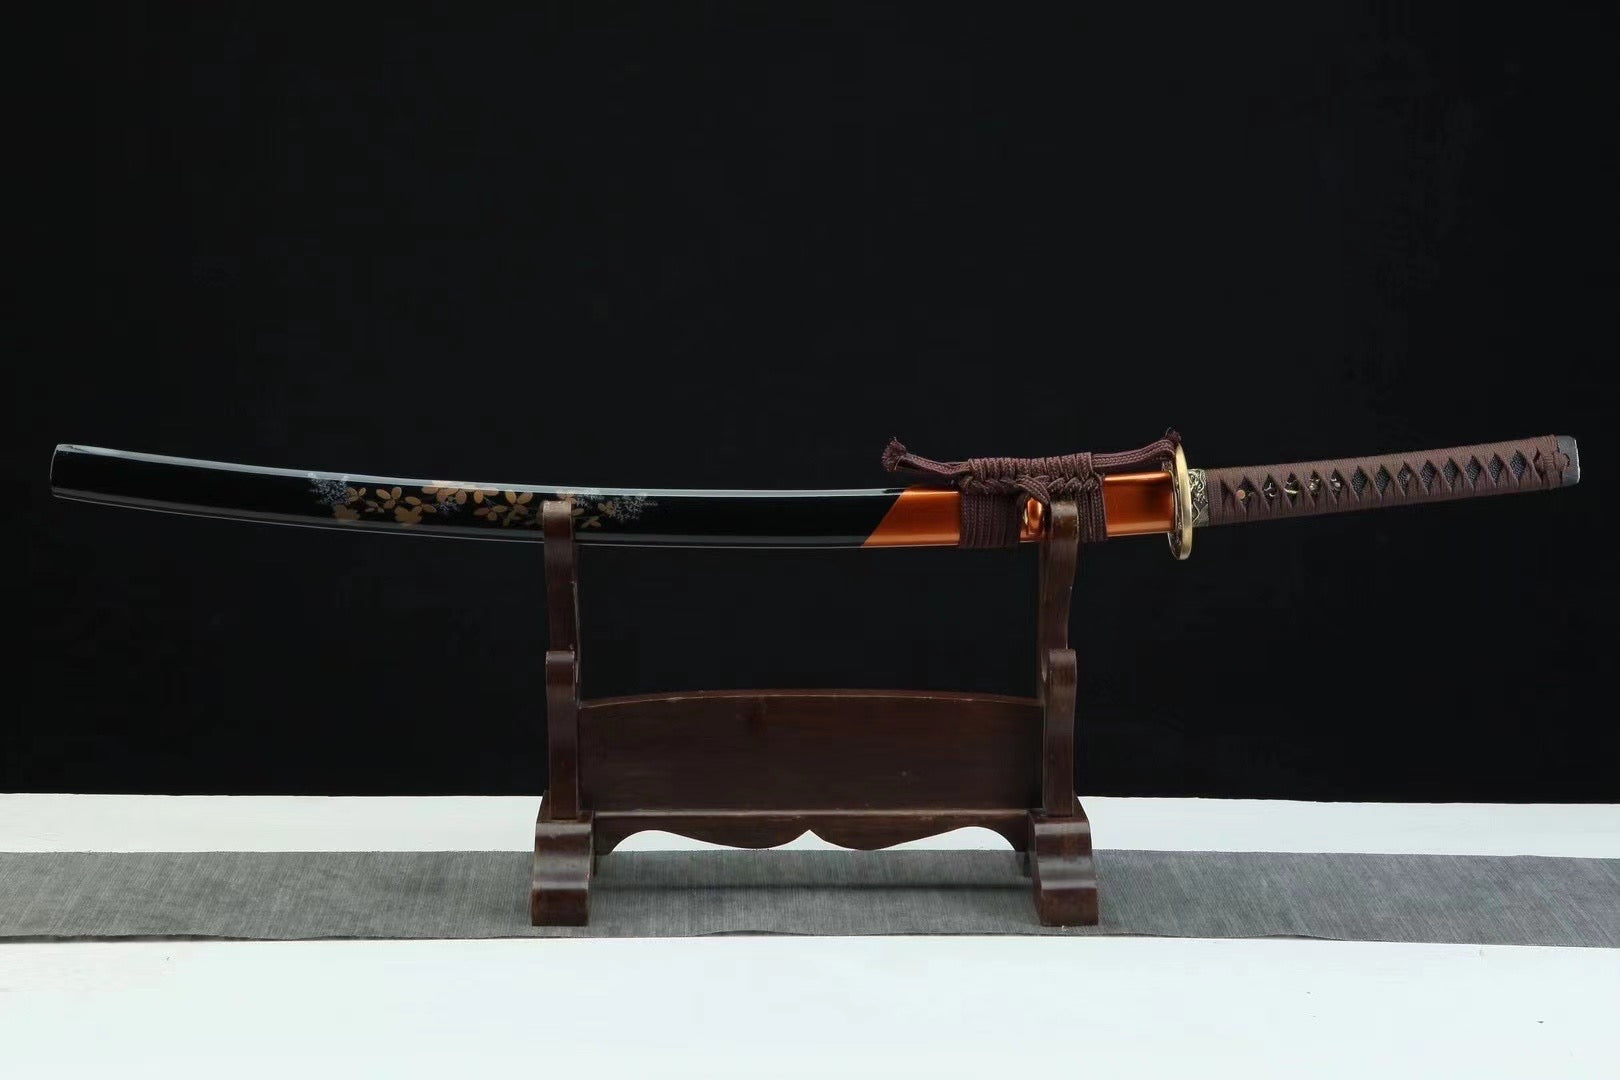 Damascus Steel Sword Falling Flower Katana Sword,Real Handmade Japanese Samurai Sword Full Tang